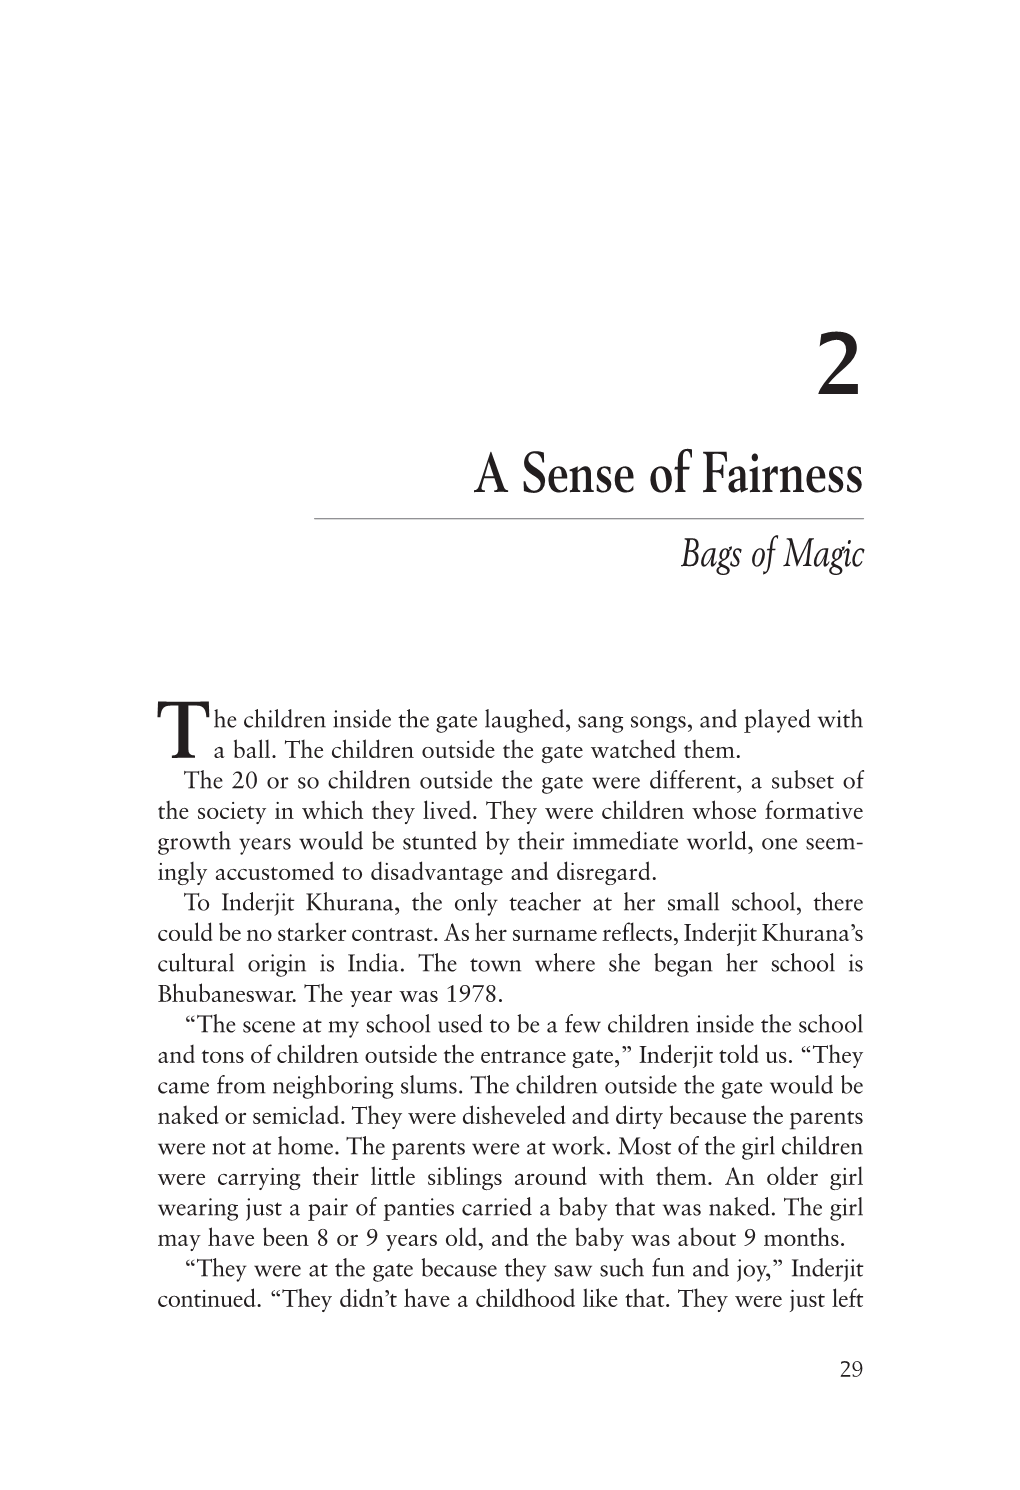 Chapter 2: a Sense of Fairness